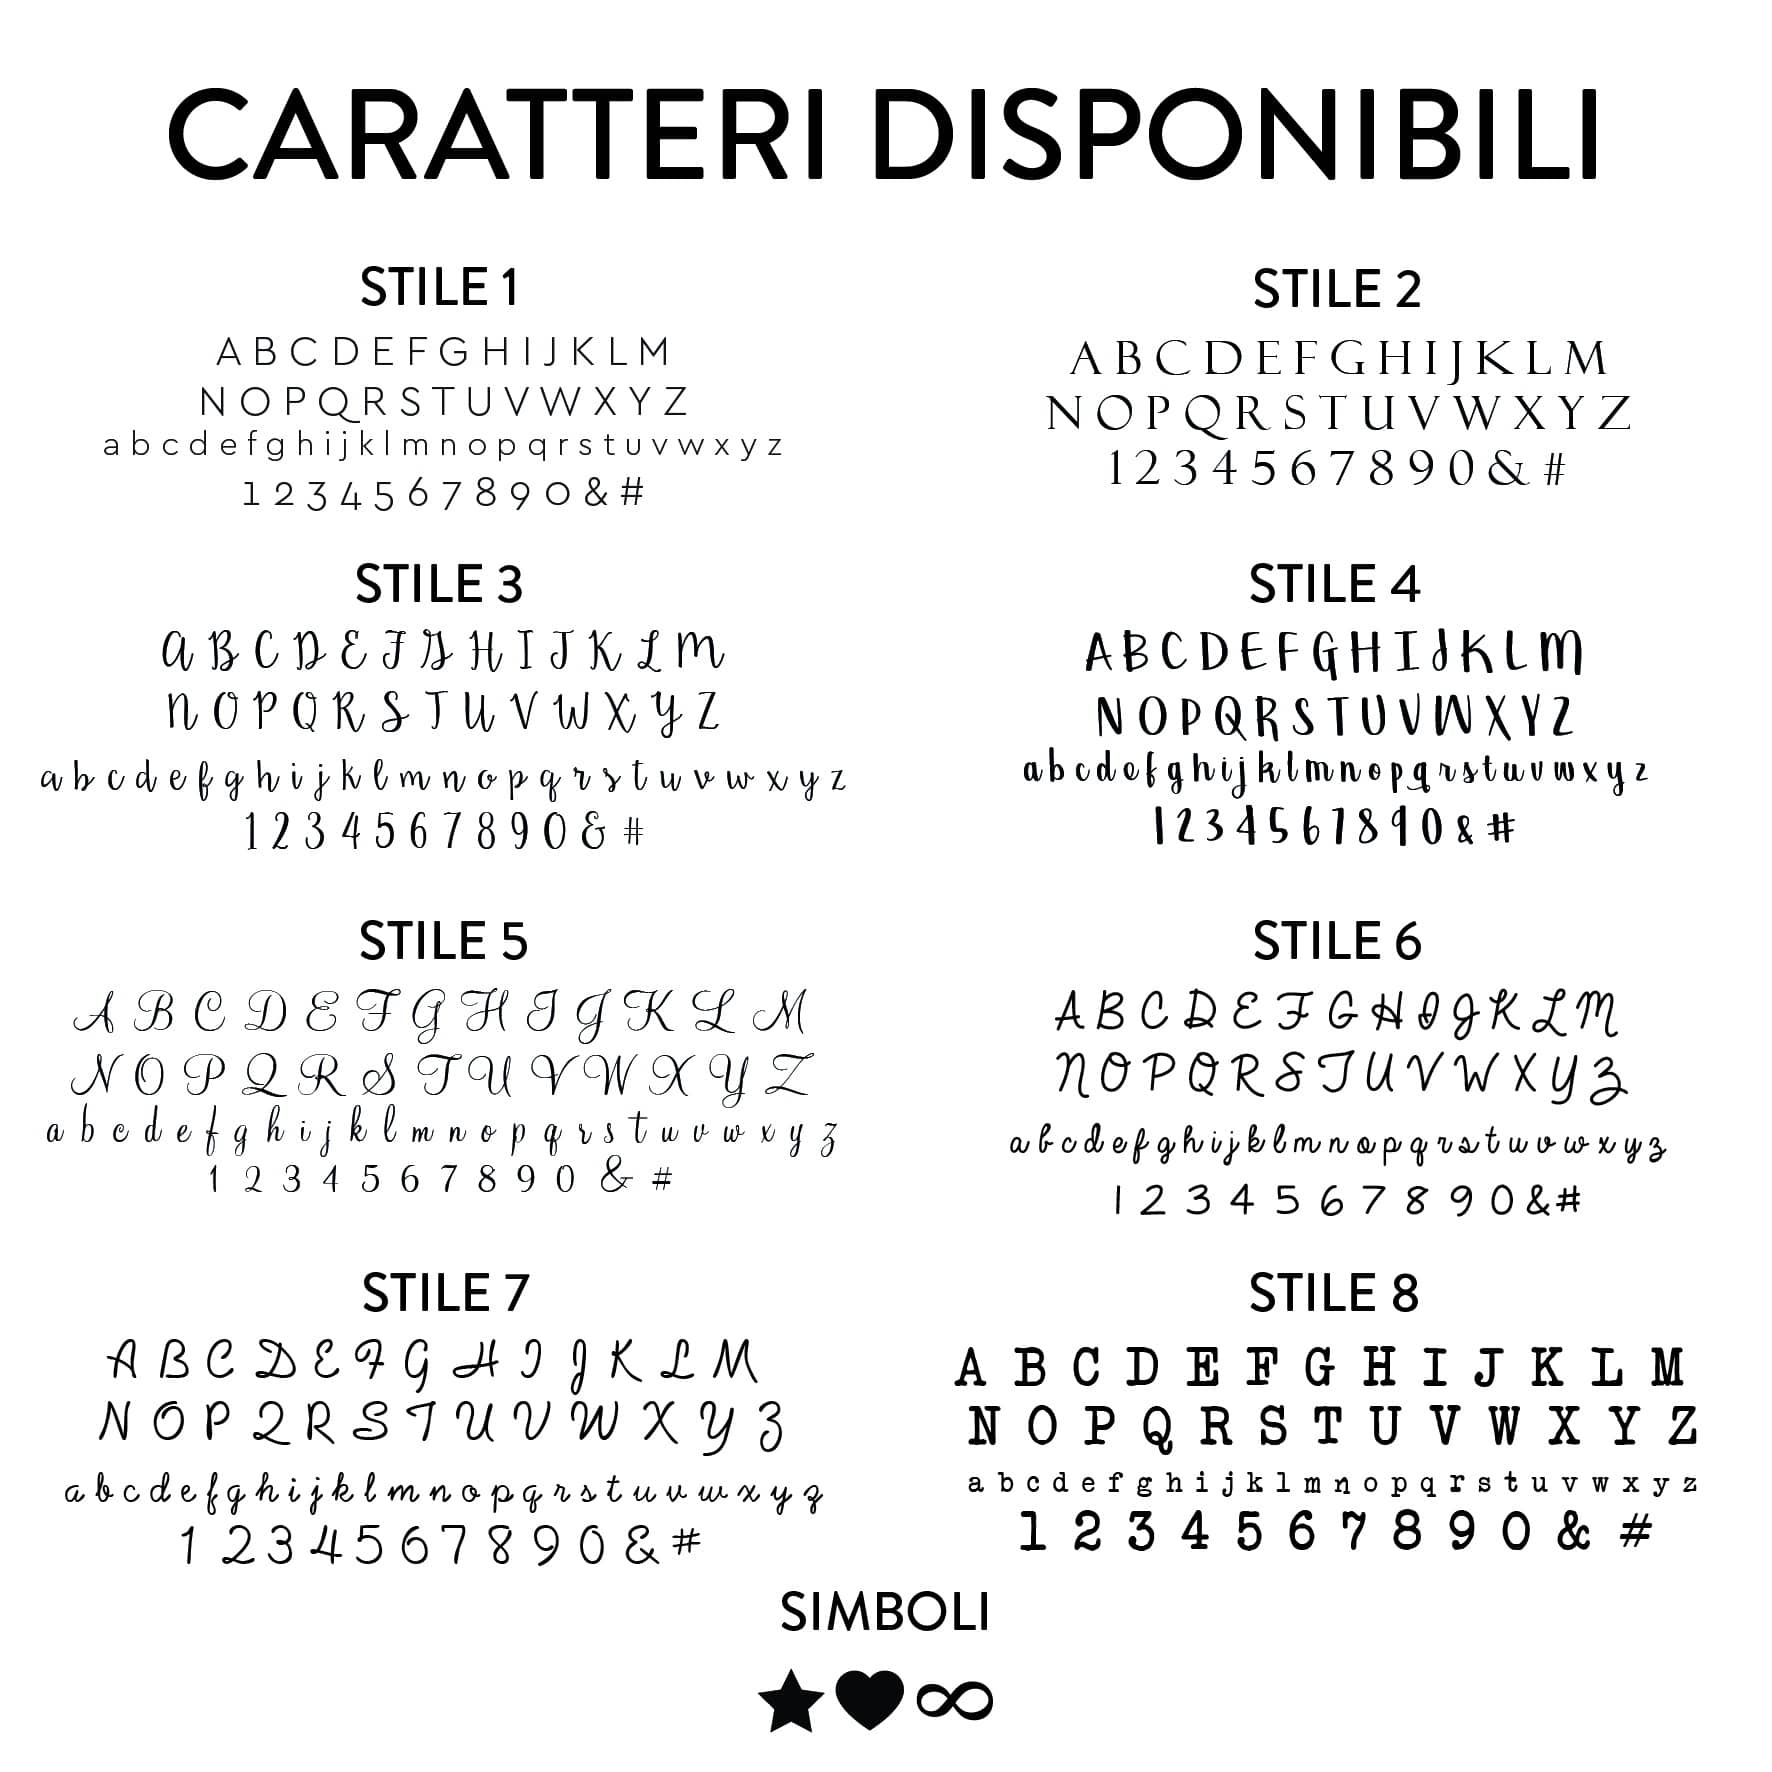 CARATTERI-DISPONIBILI-ARGENTO-01 (2)